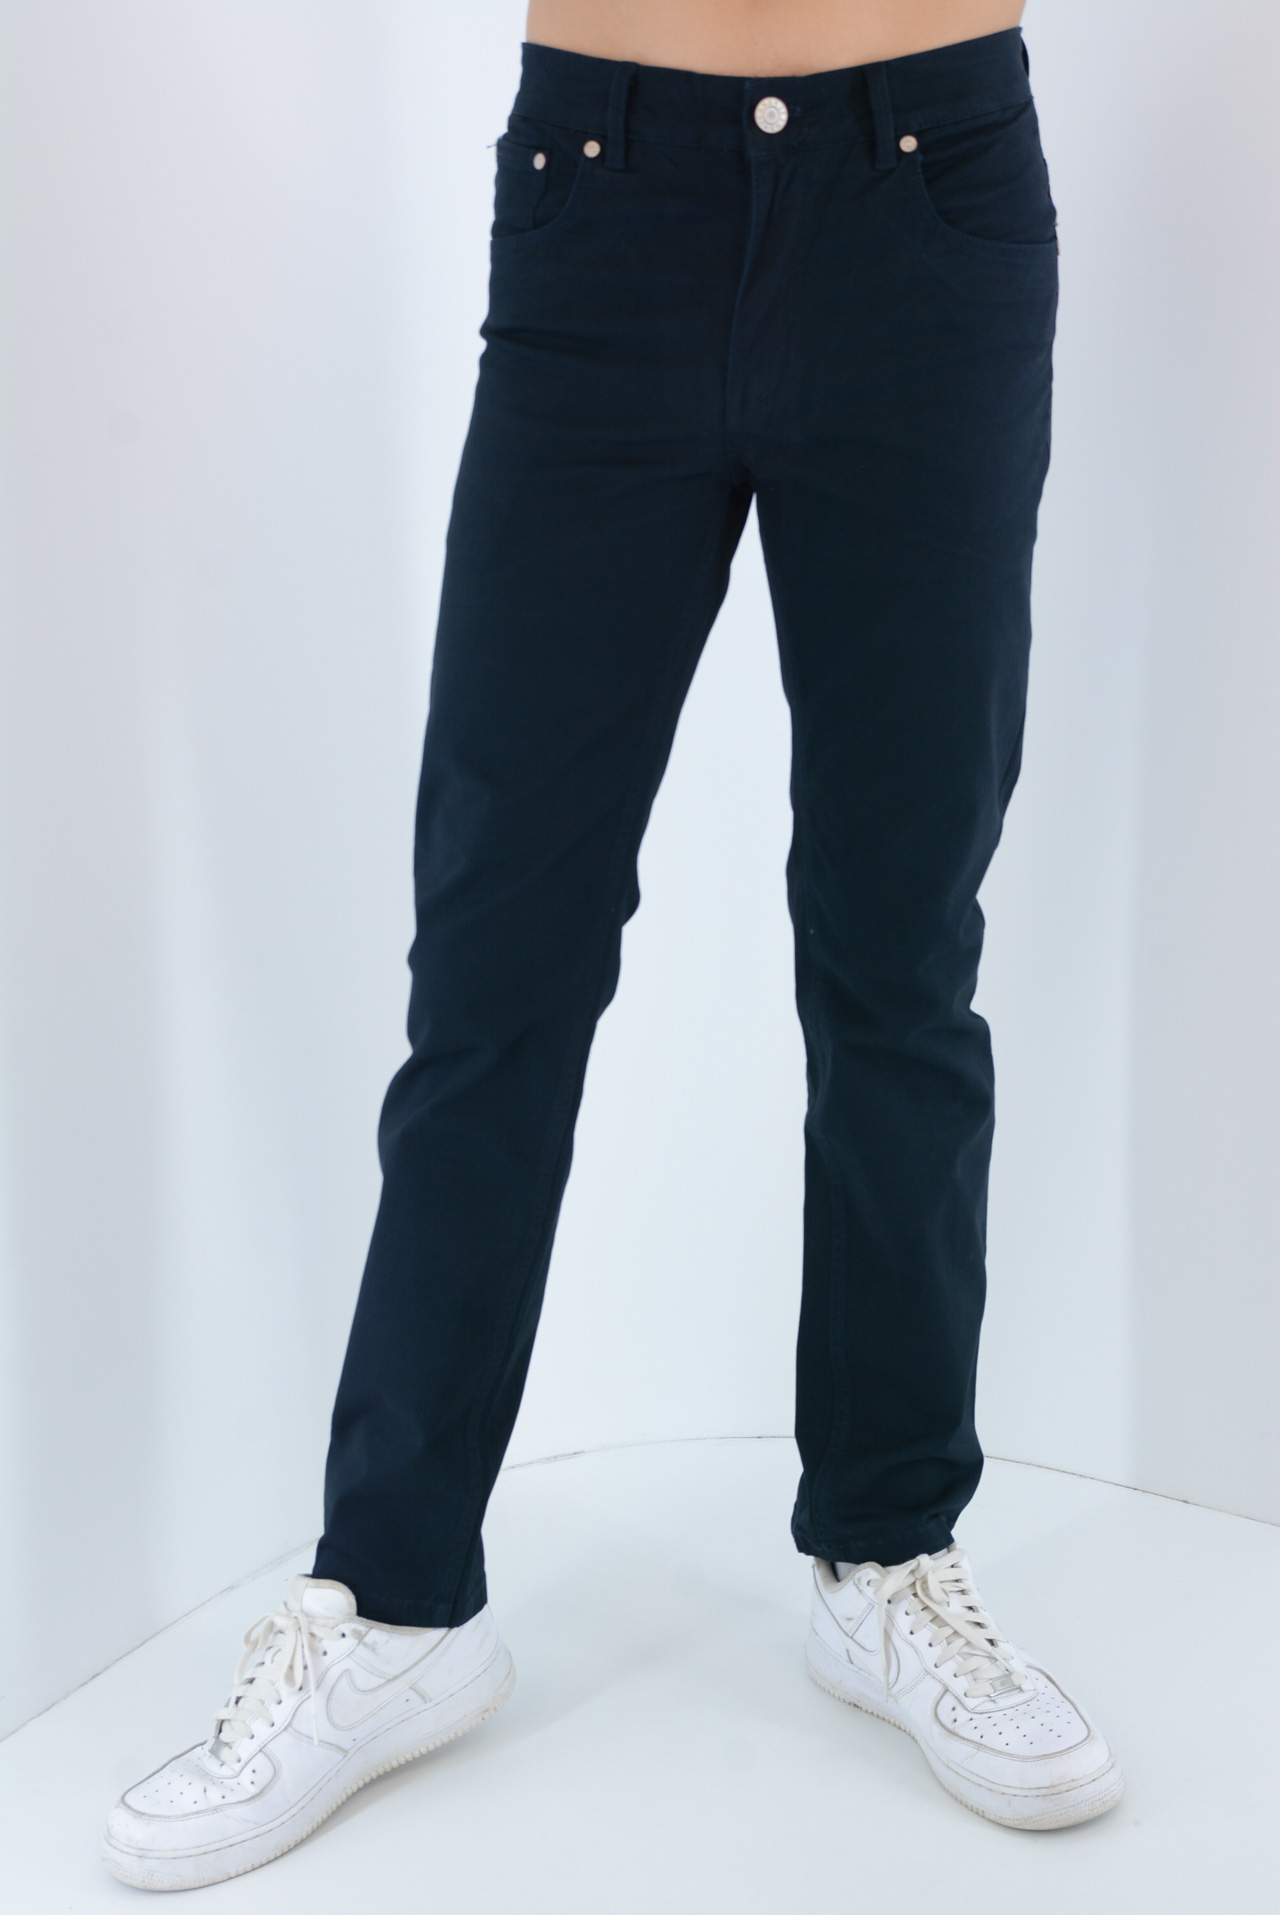 Pants male five-pocket pants code HS263